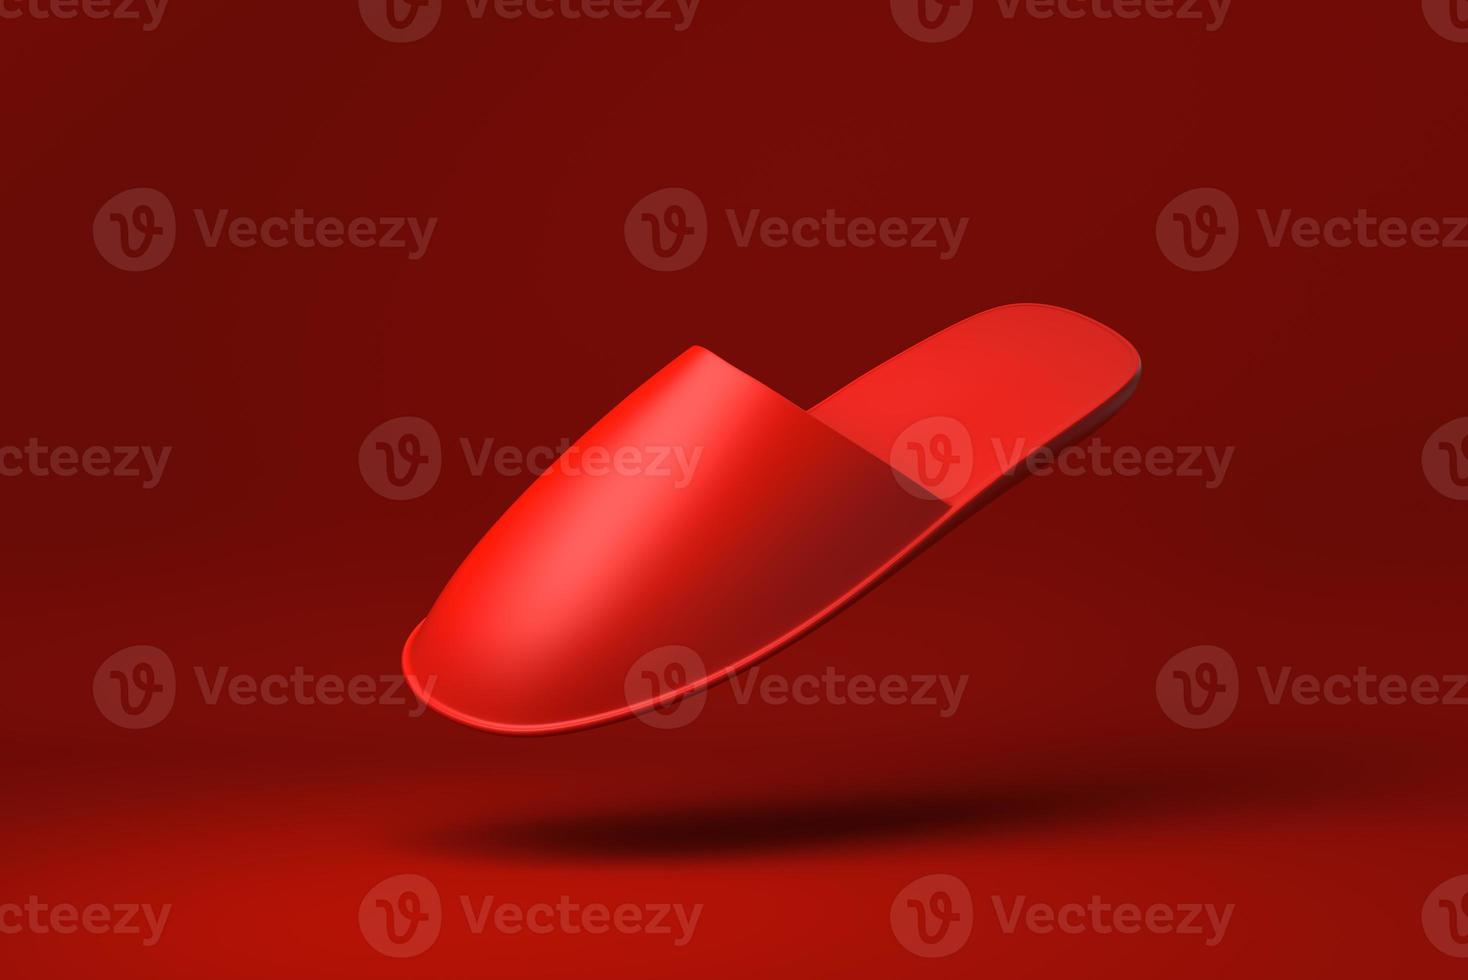 pantoufles rouges flottant sur fond rouge. idée de concept minimal créatif. rendu 3D. photo